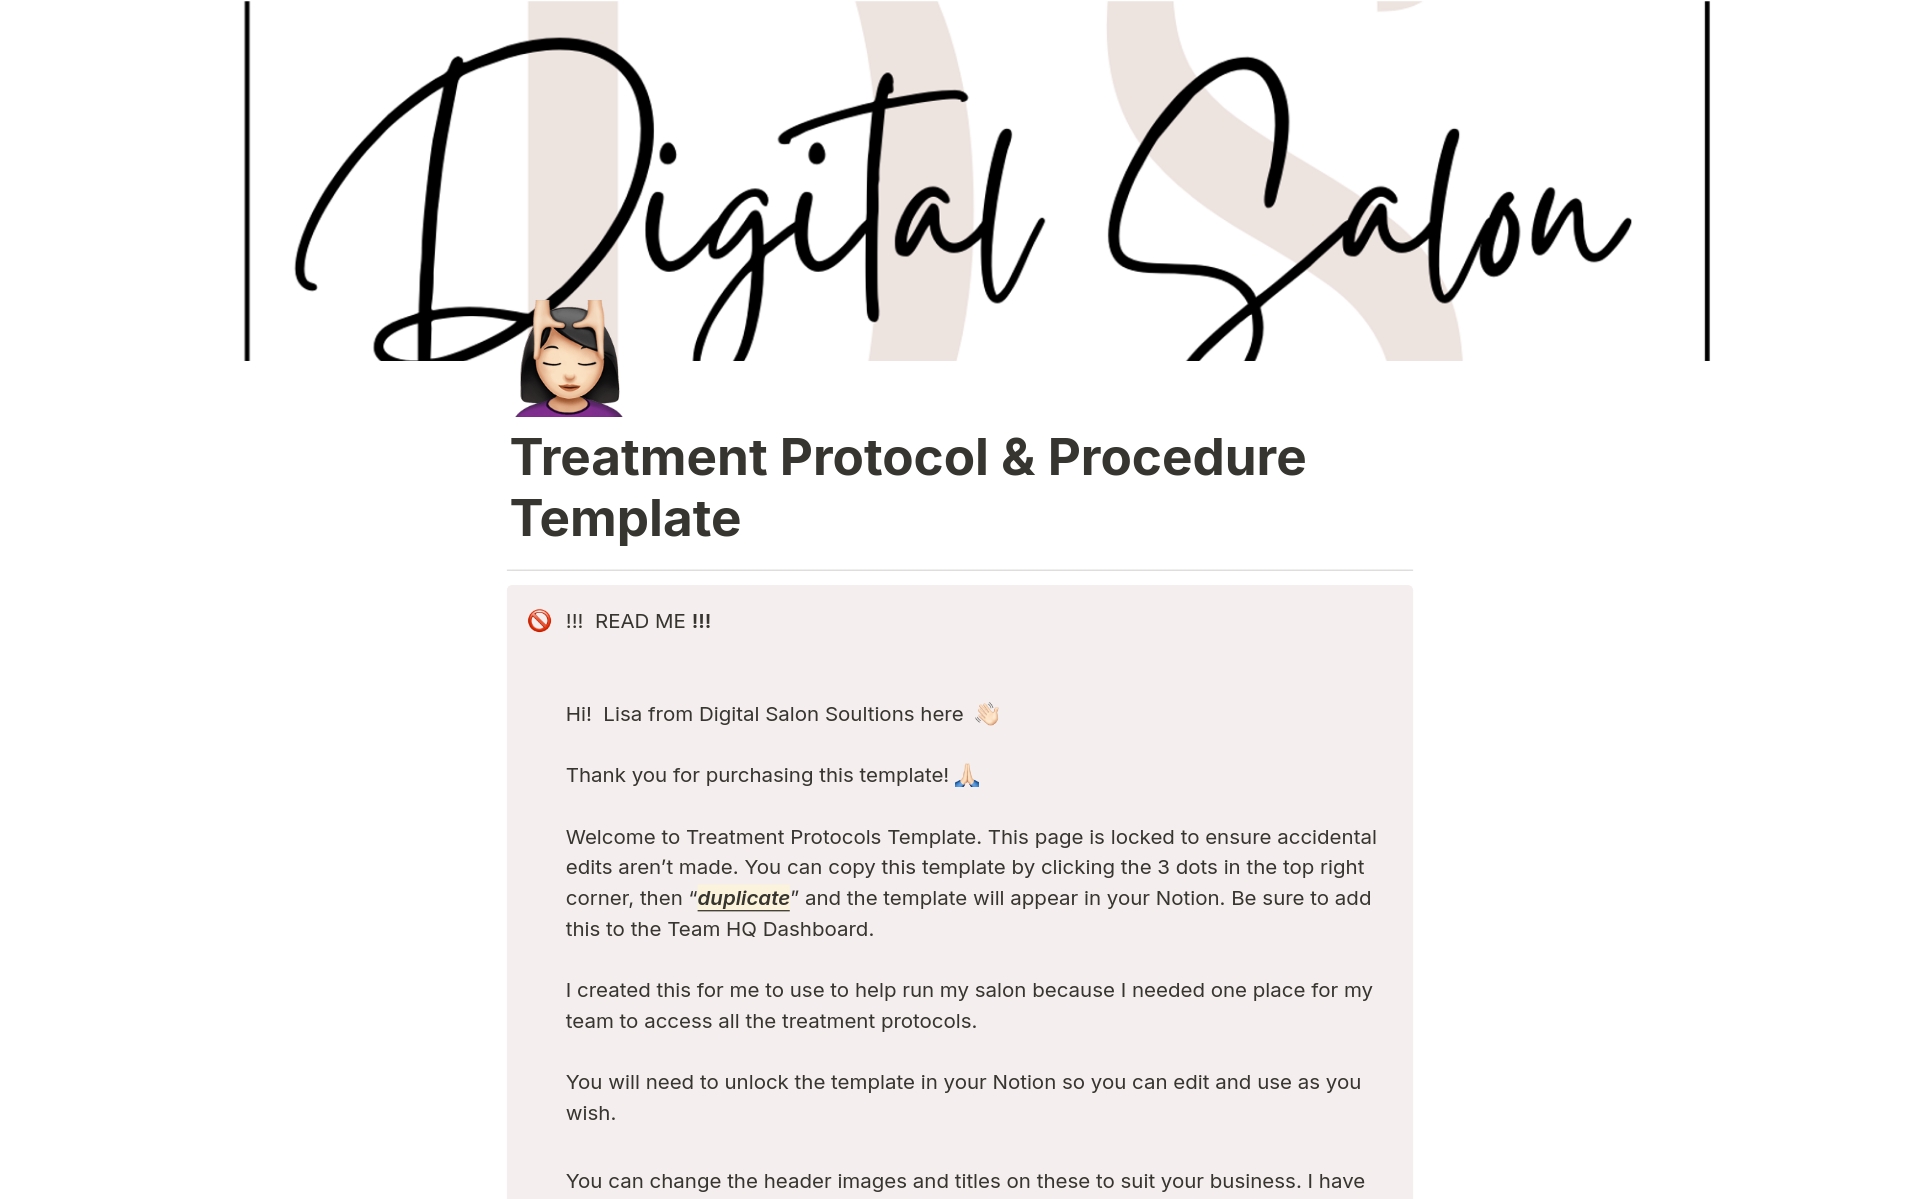 En förhandsgranskning av mallen för Treatment Protocol & Procedure Template